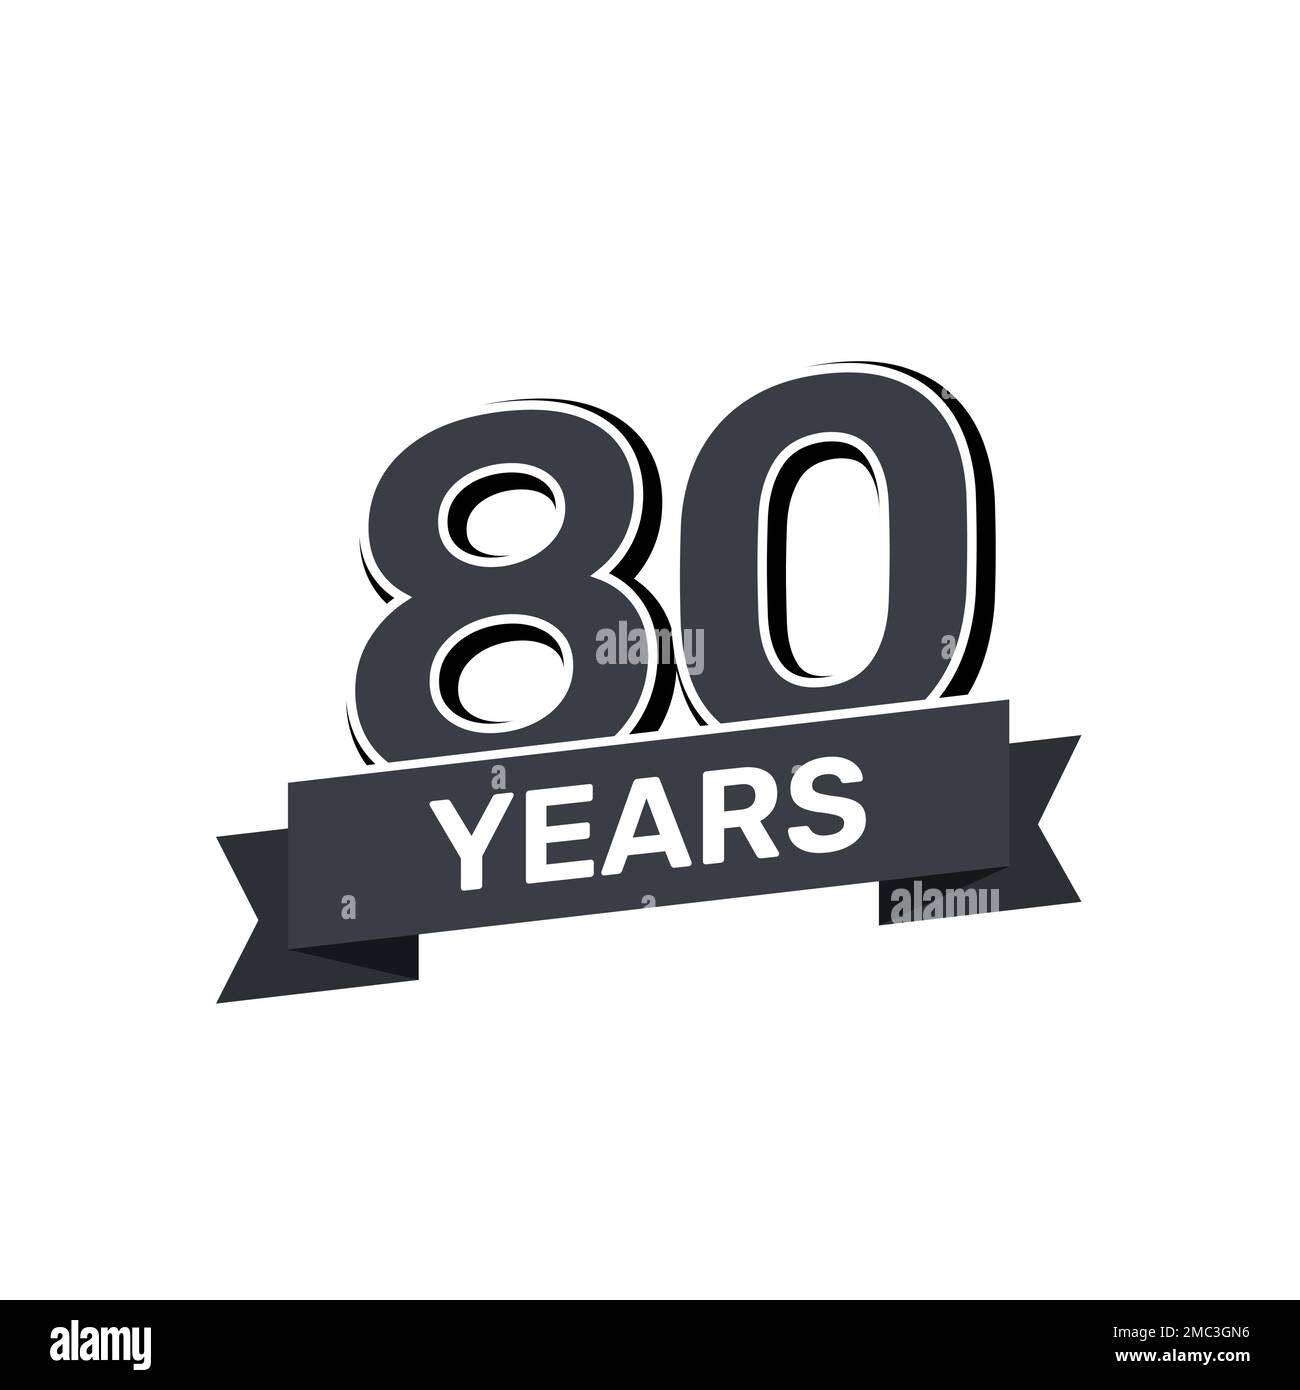 80th anniversary retro stamp icon badge invitation. Anniversary 80 sealbackground happy label logo. Stock Vector